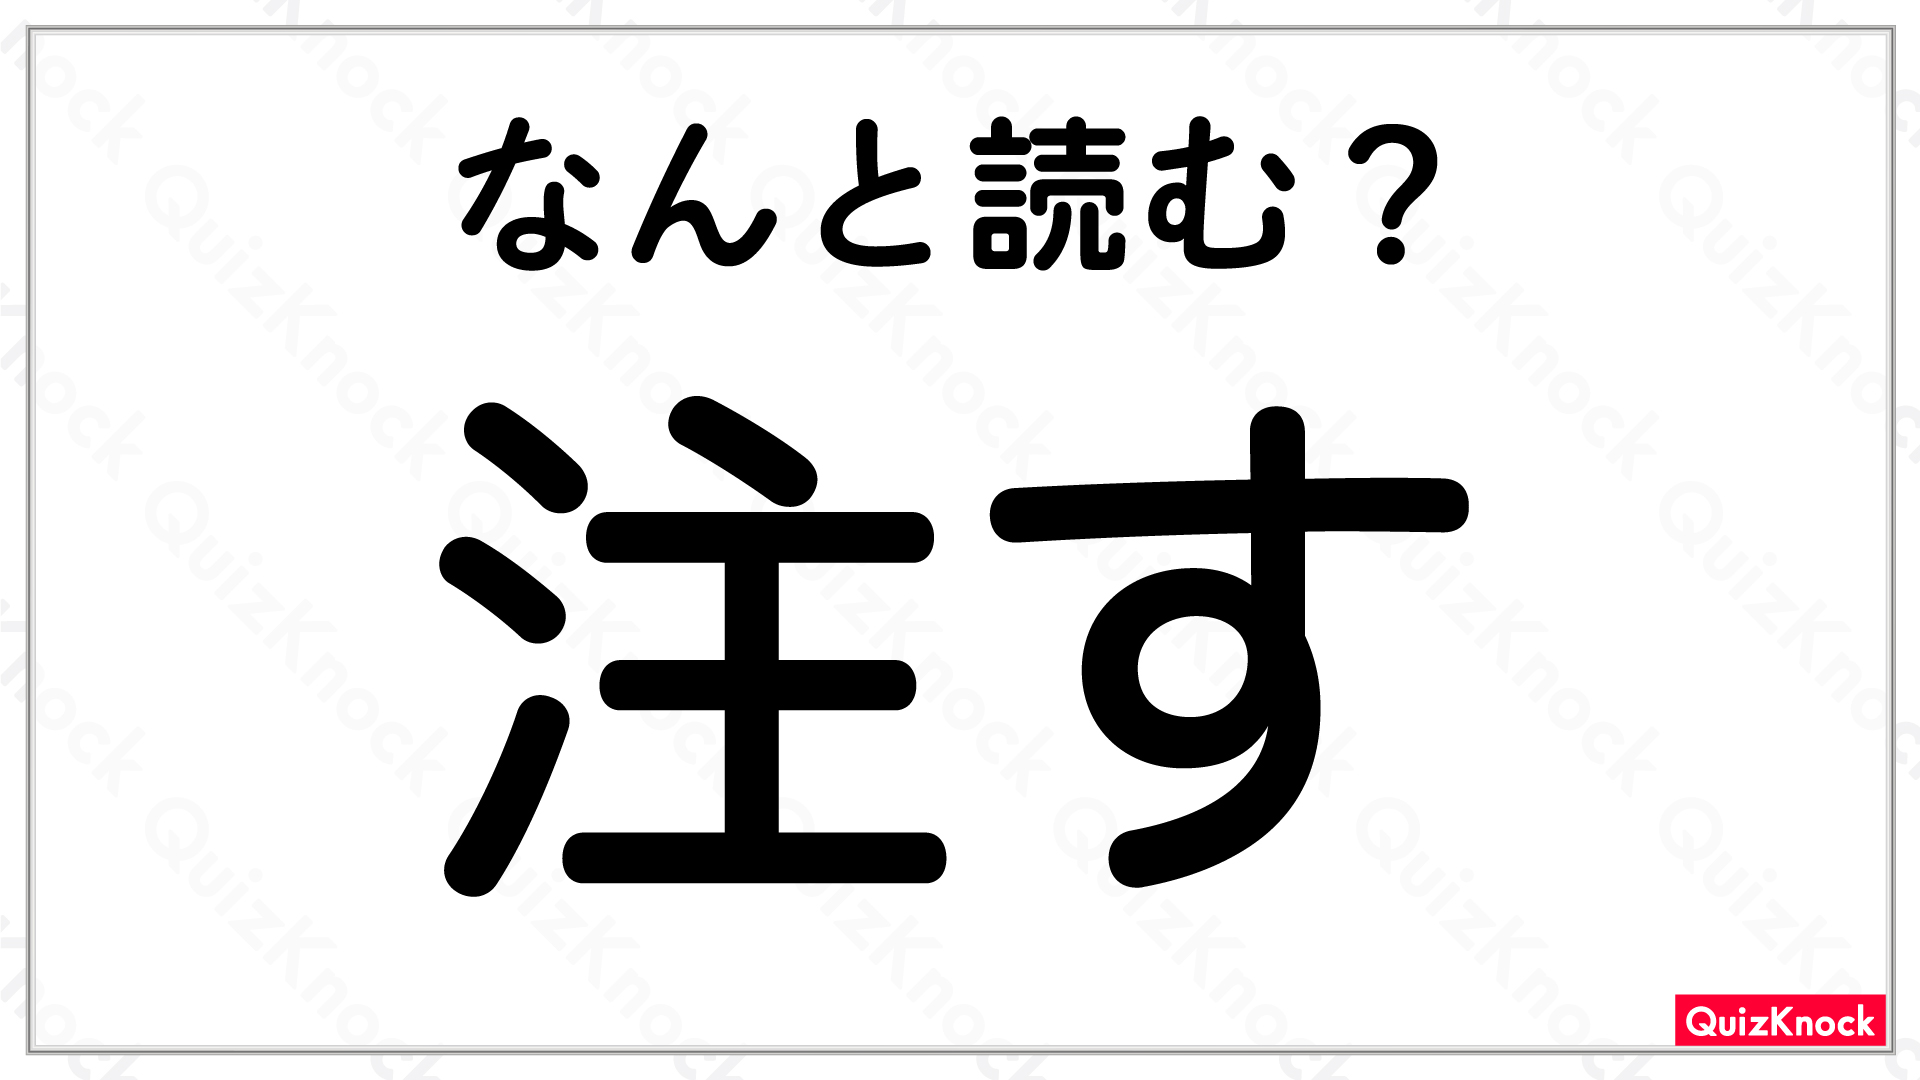 注す 小学3年生で習う漢字 正しく読めますか 今日の一問